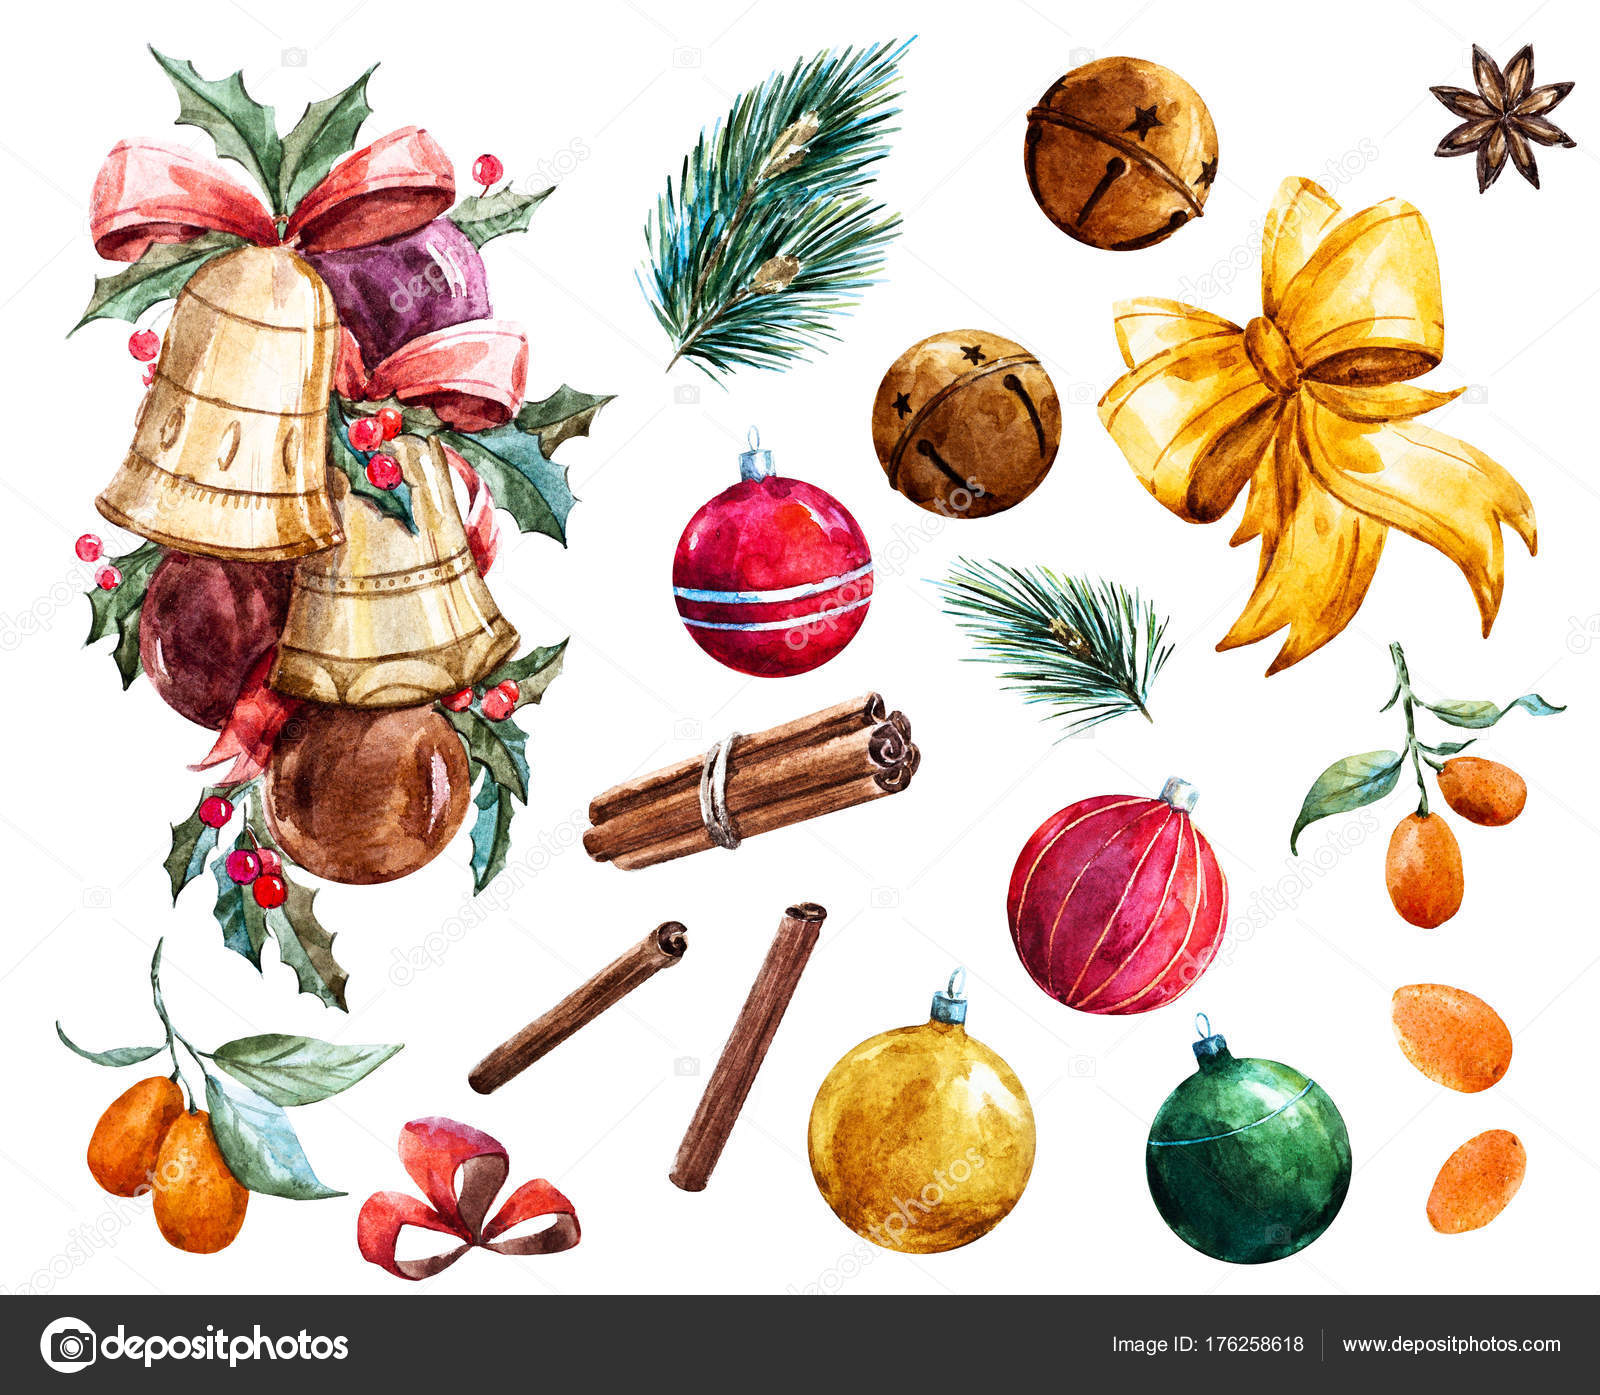 Watercolor christmas set — Stock Photo © ZeninaAsya #176258618